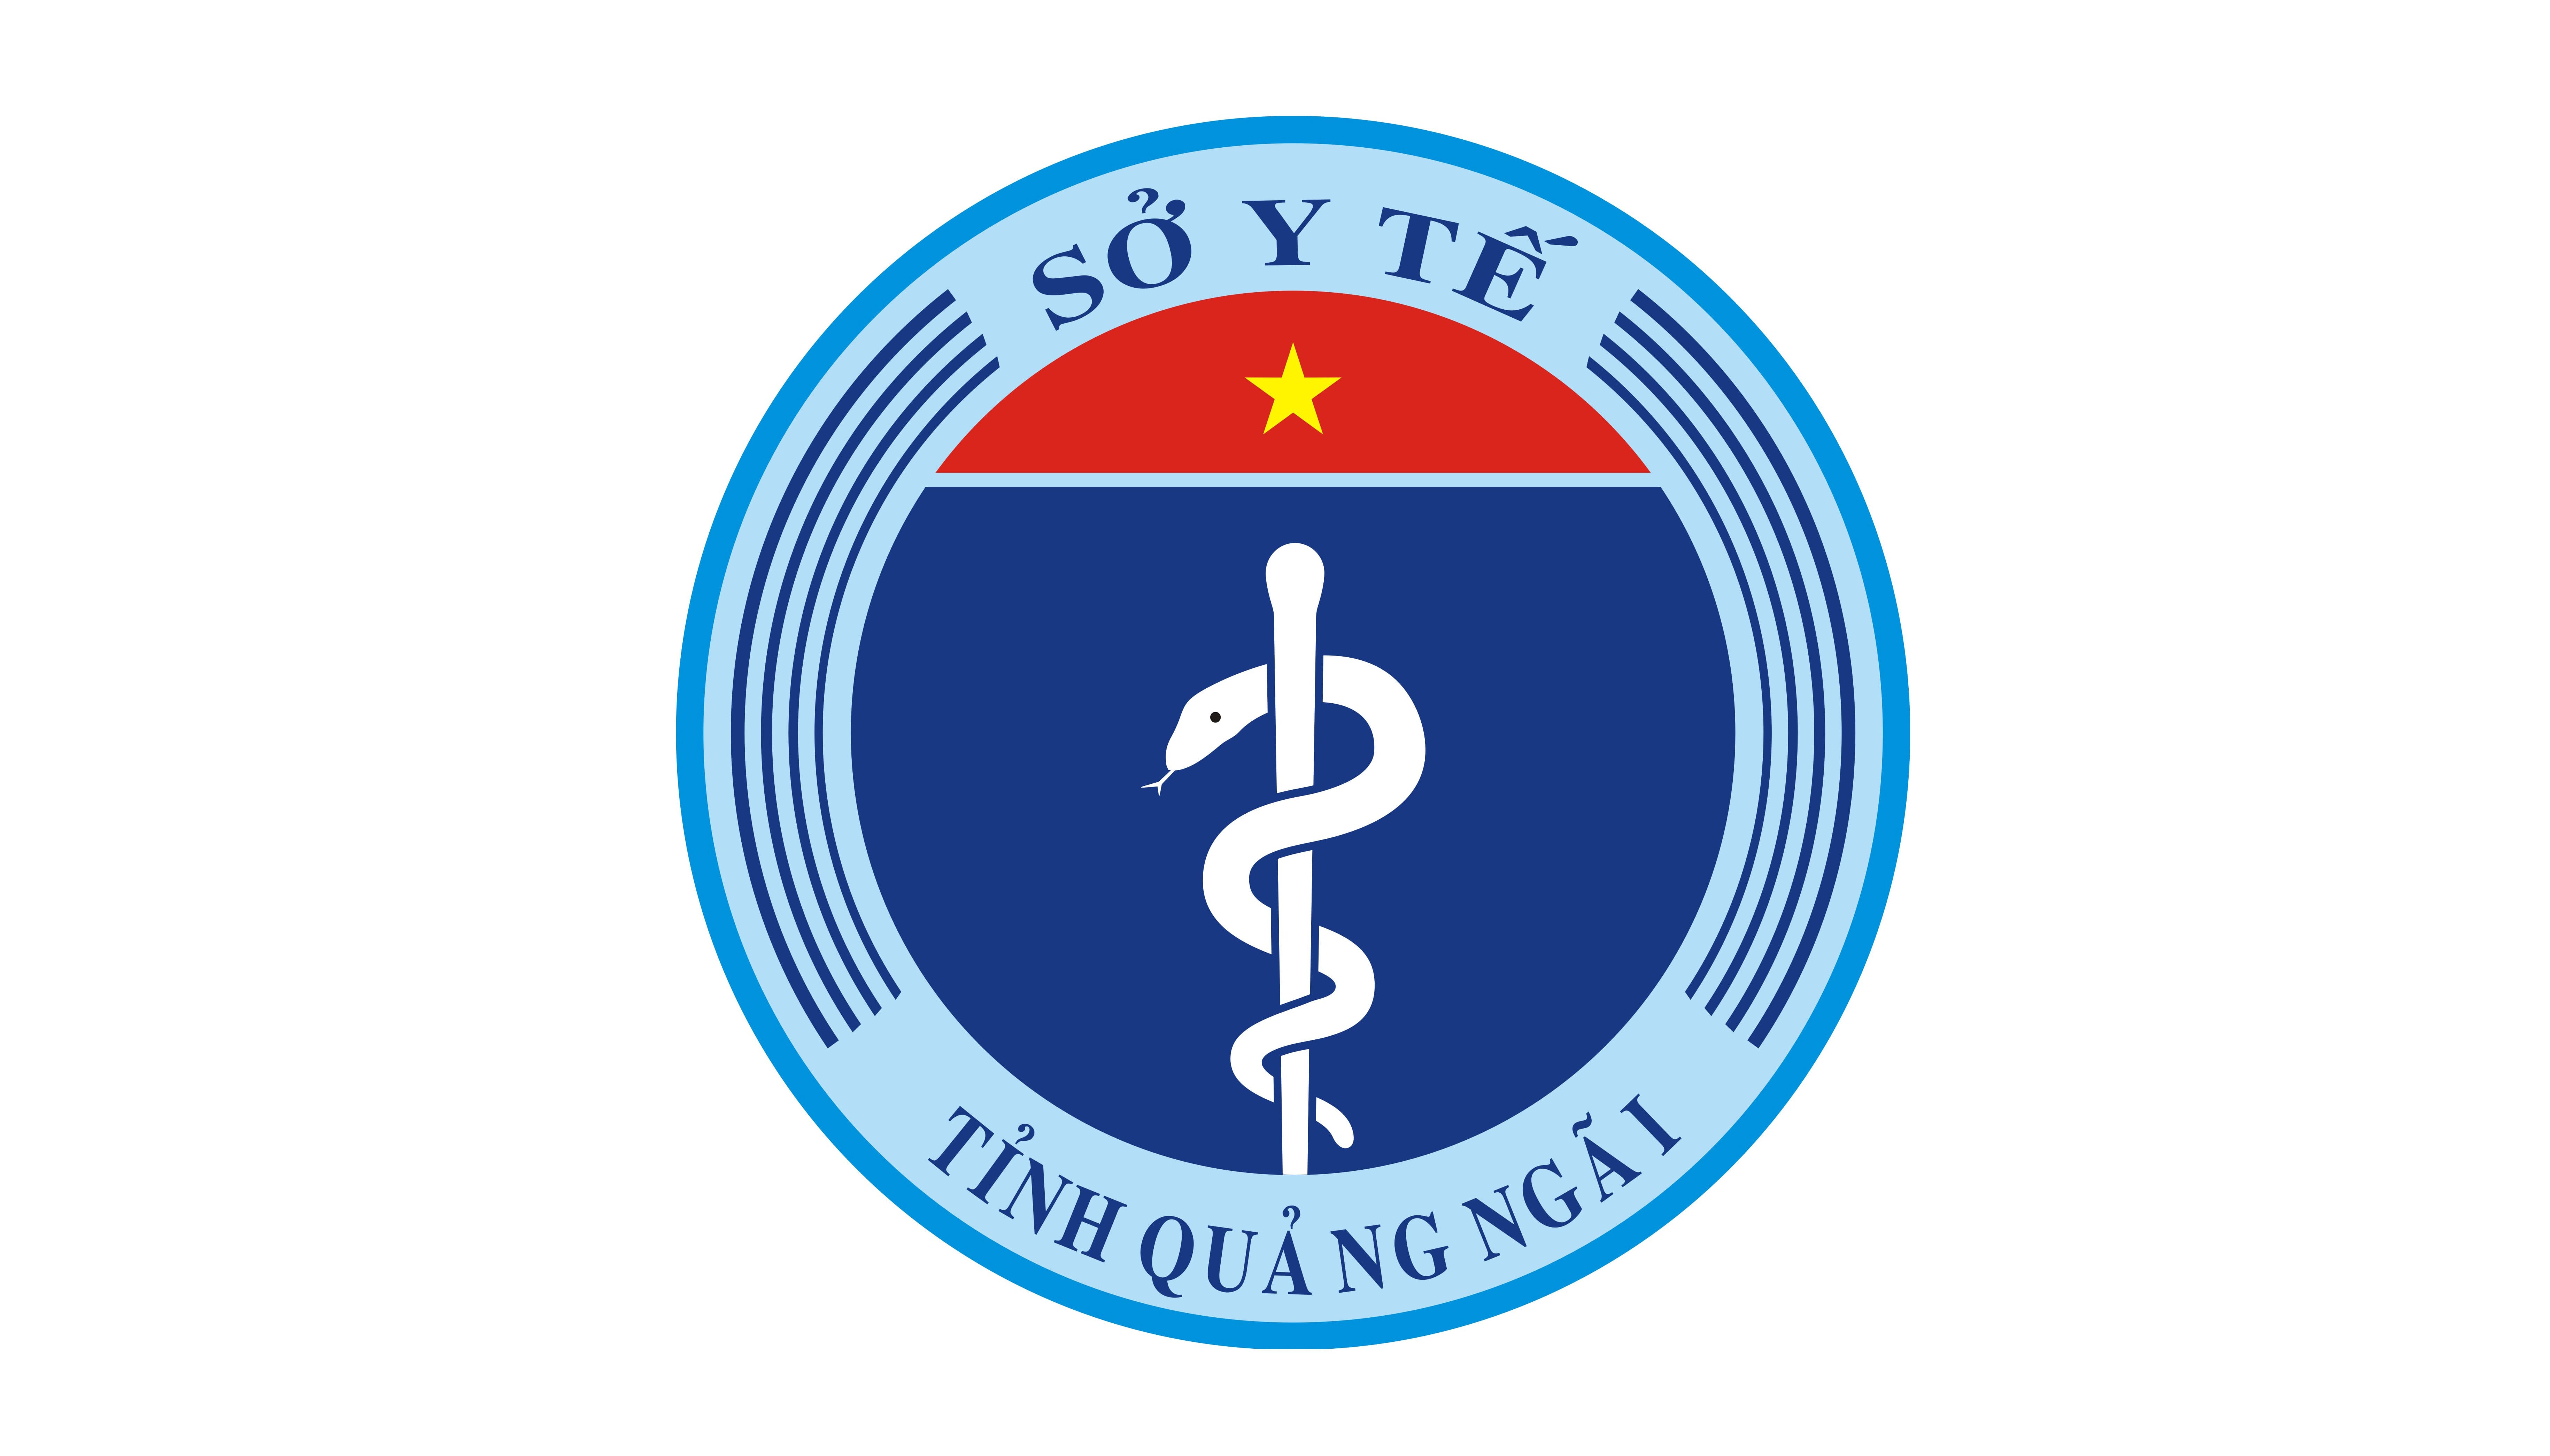 Sở Y tế thông báo tuyển dụng viên chức cho các đơn vị sự nghiệp trực thuộc Sở Y tế tỉnh Quảng Ngãi năm 2021